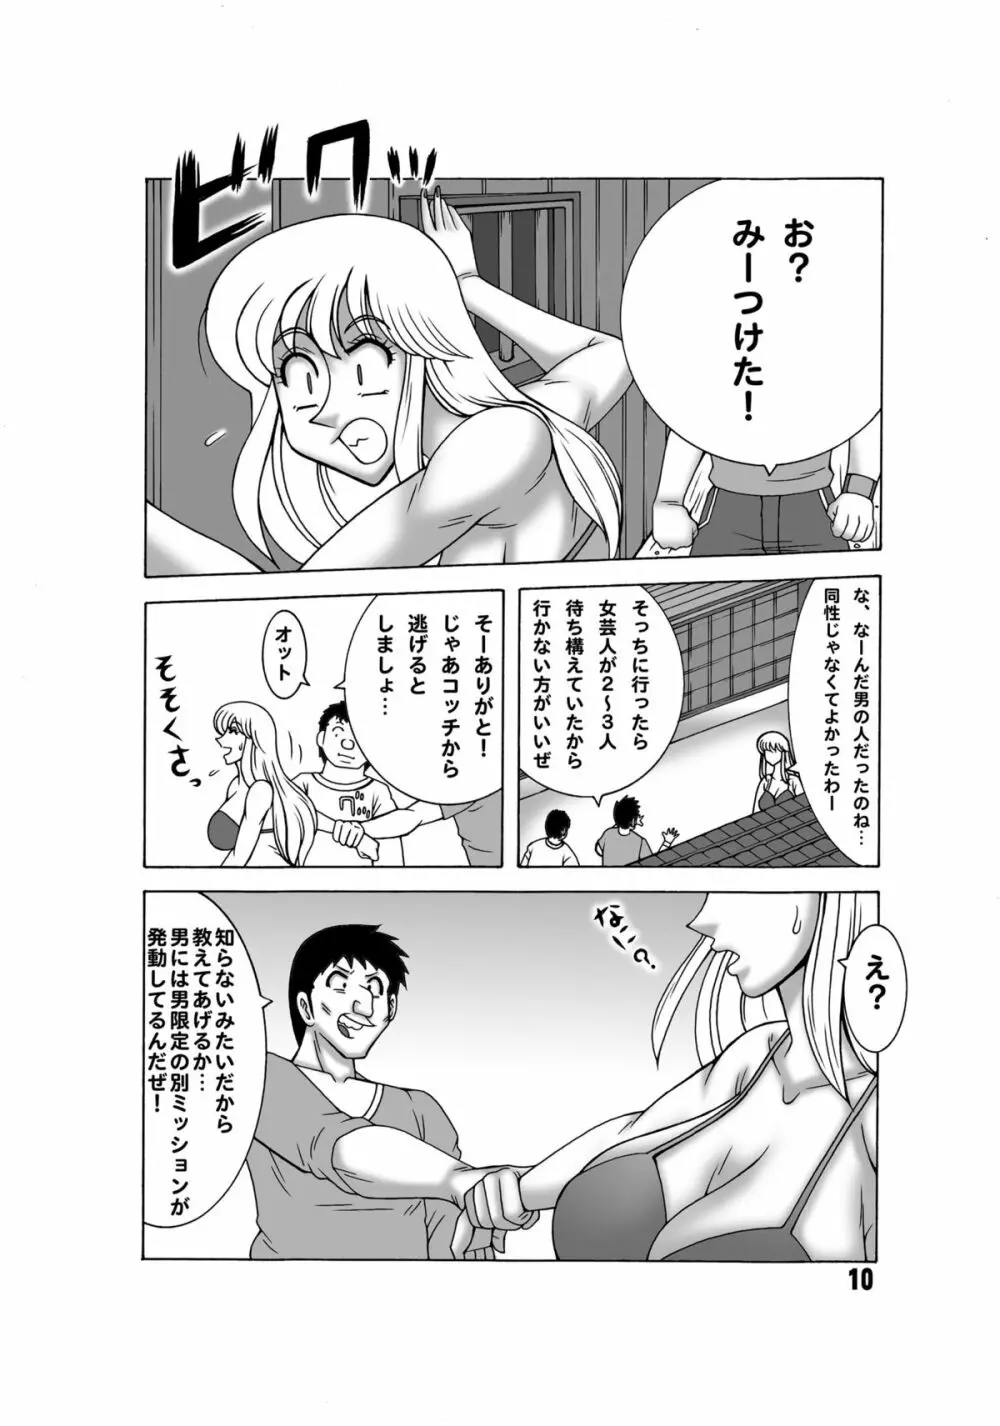 こち亀ダイナマイト 13 - page9